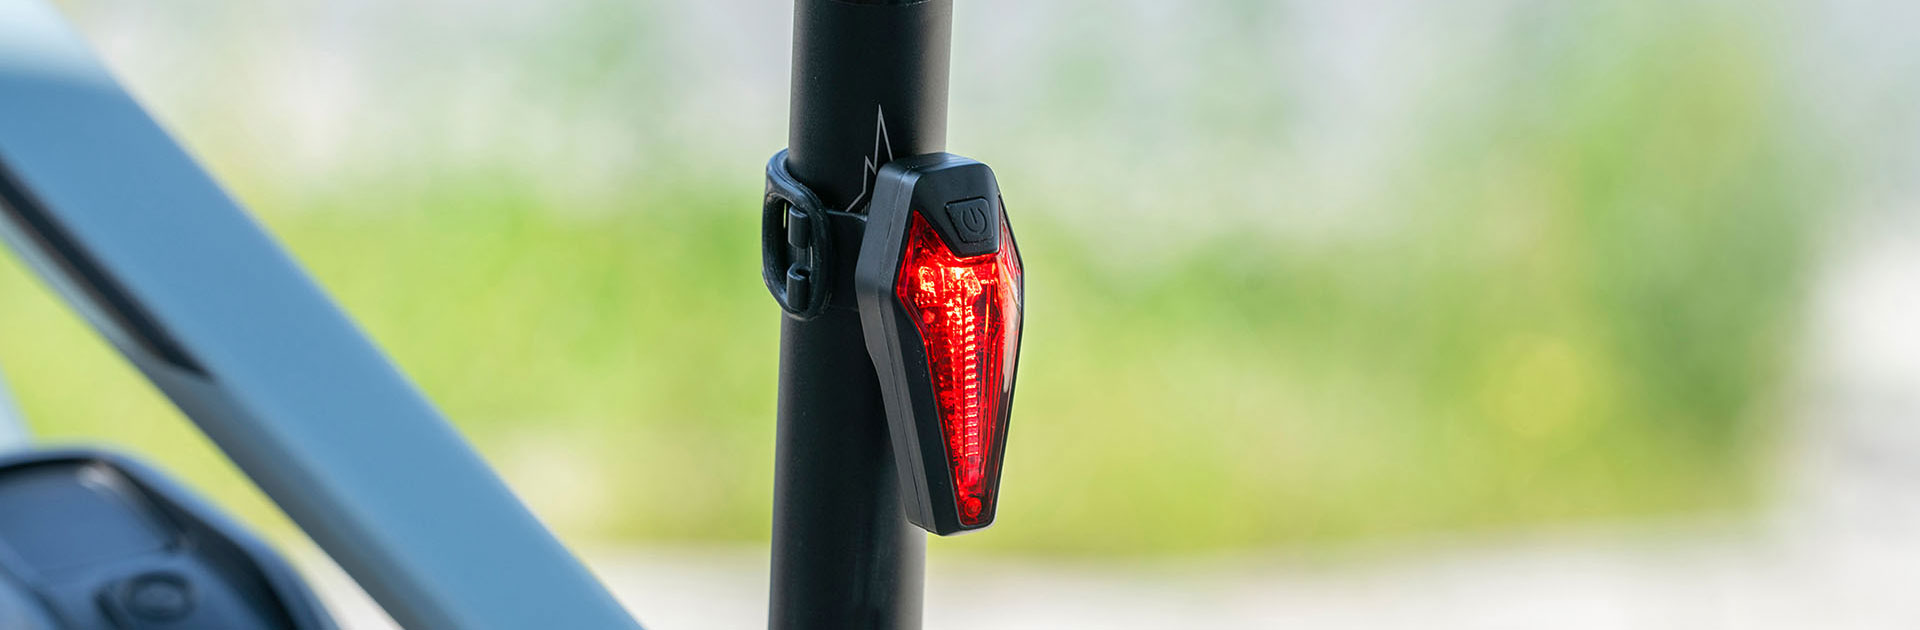 Prophete 5693 LED Rücklicht mit Bremslichtfunktion für E-Bike (6-48V),  22,99 €